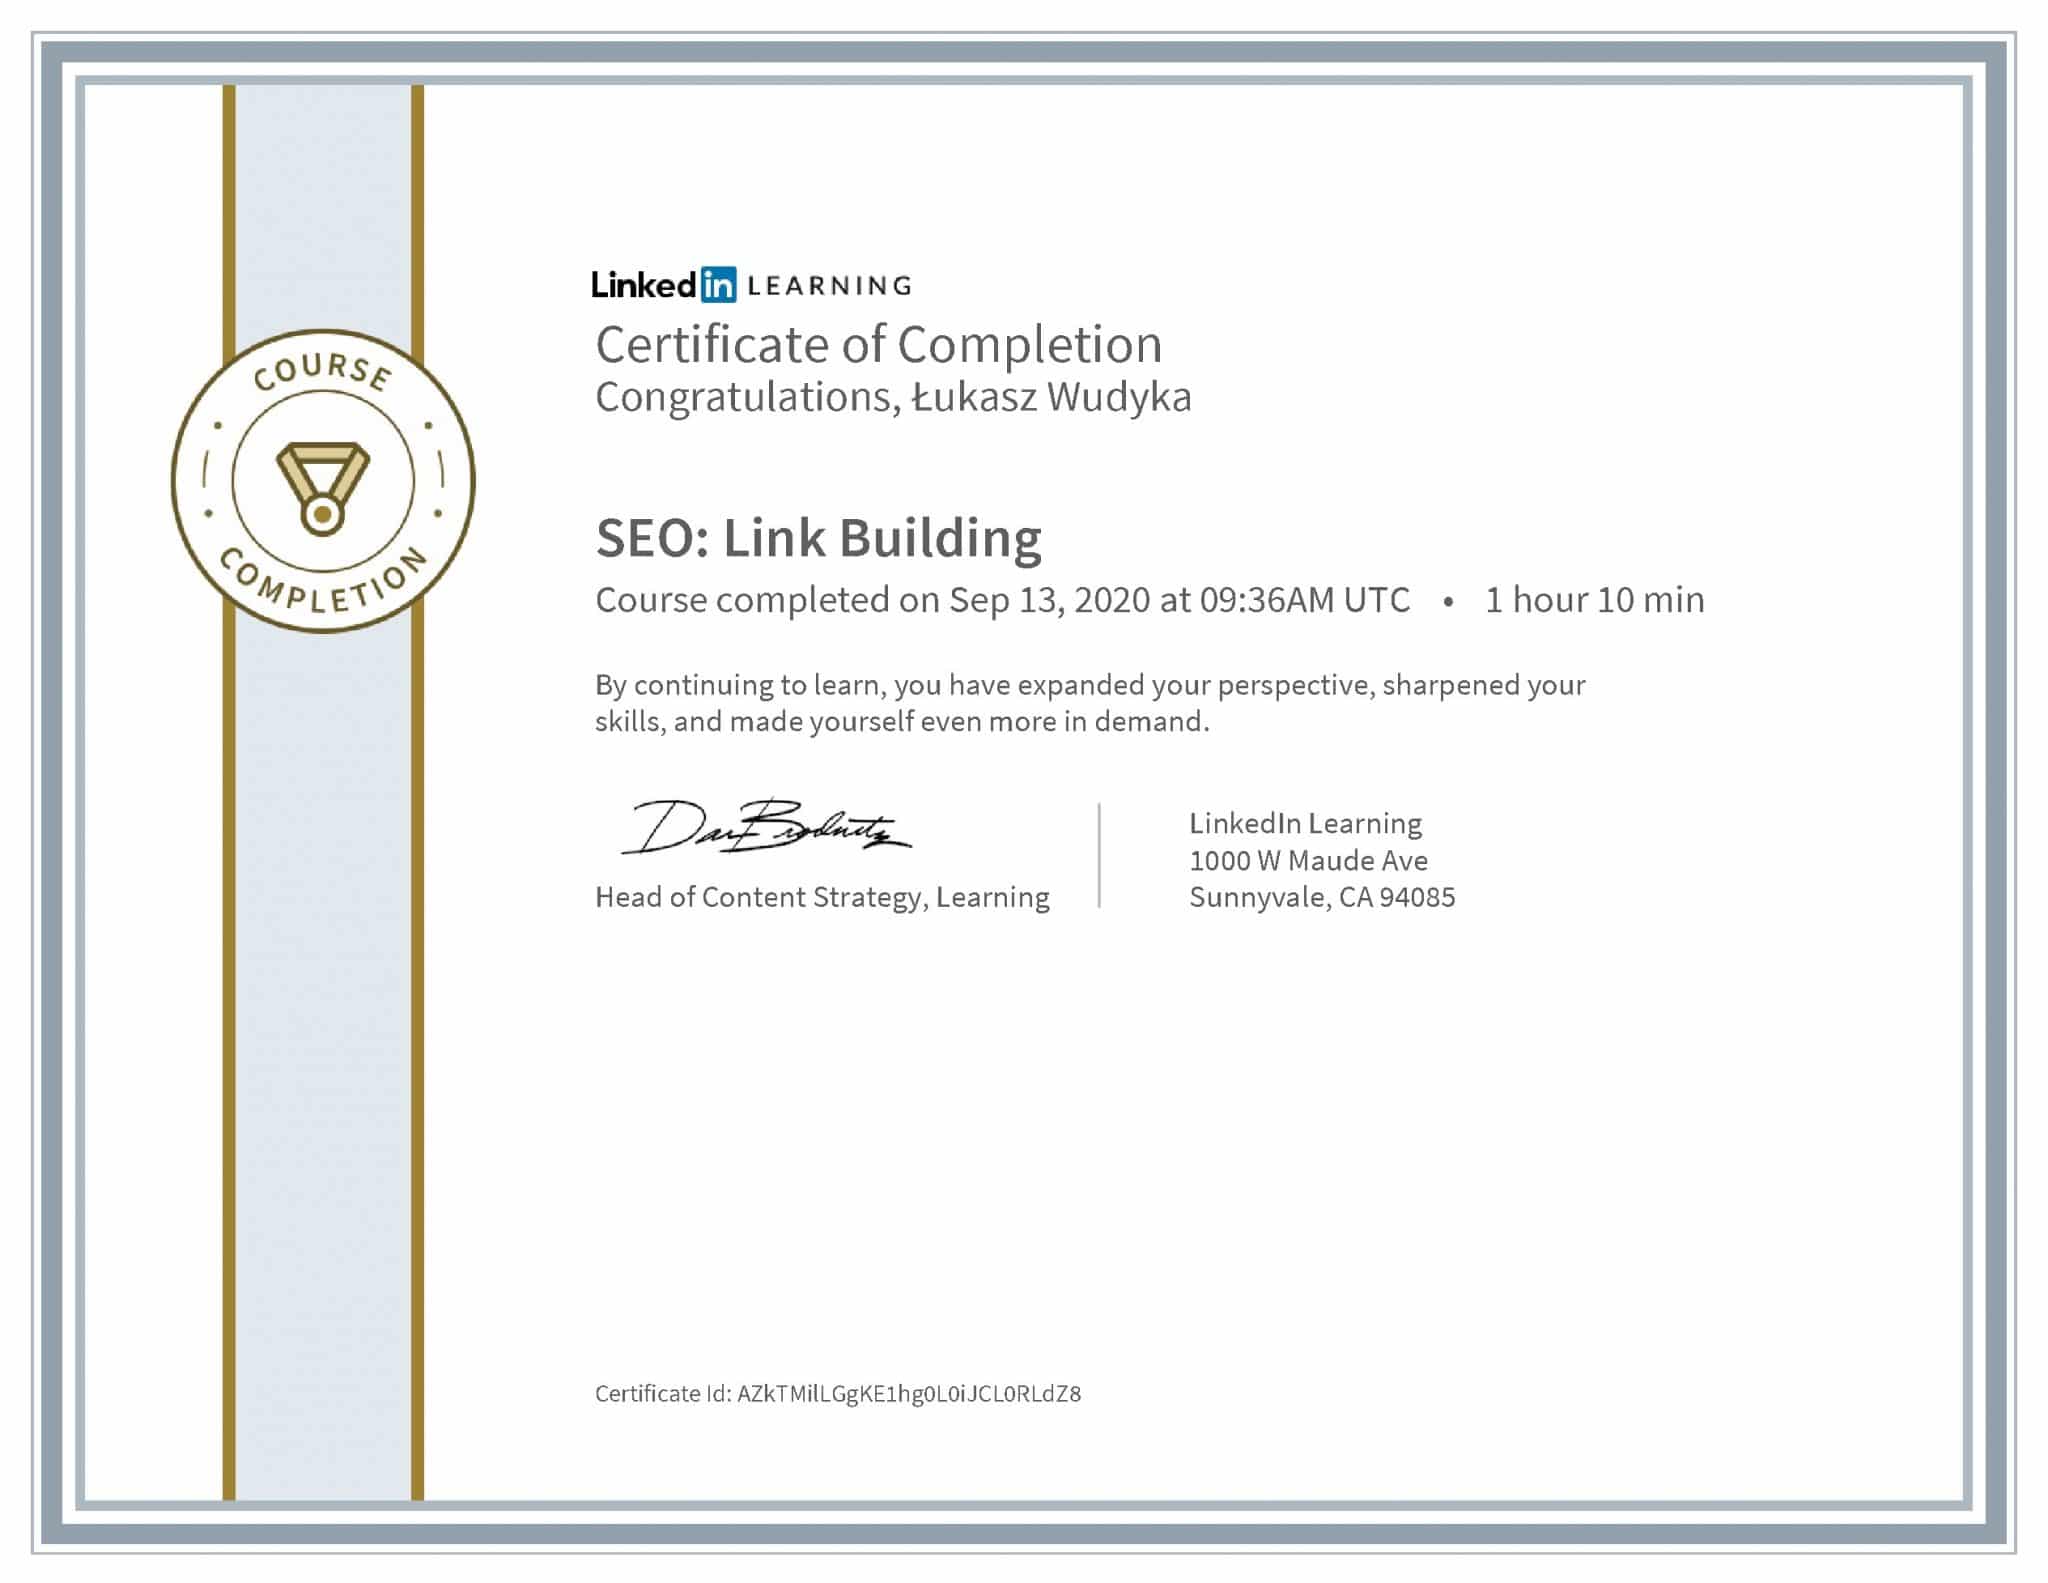 Łukasz Wudyka certyfikat LinkedIn SEO: Link Building